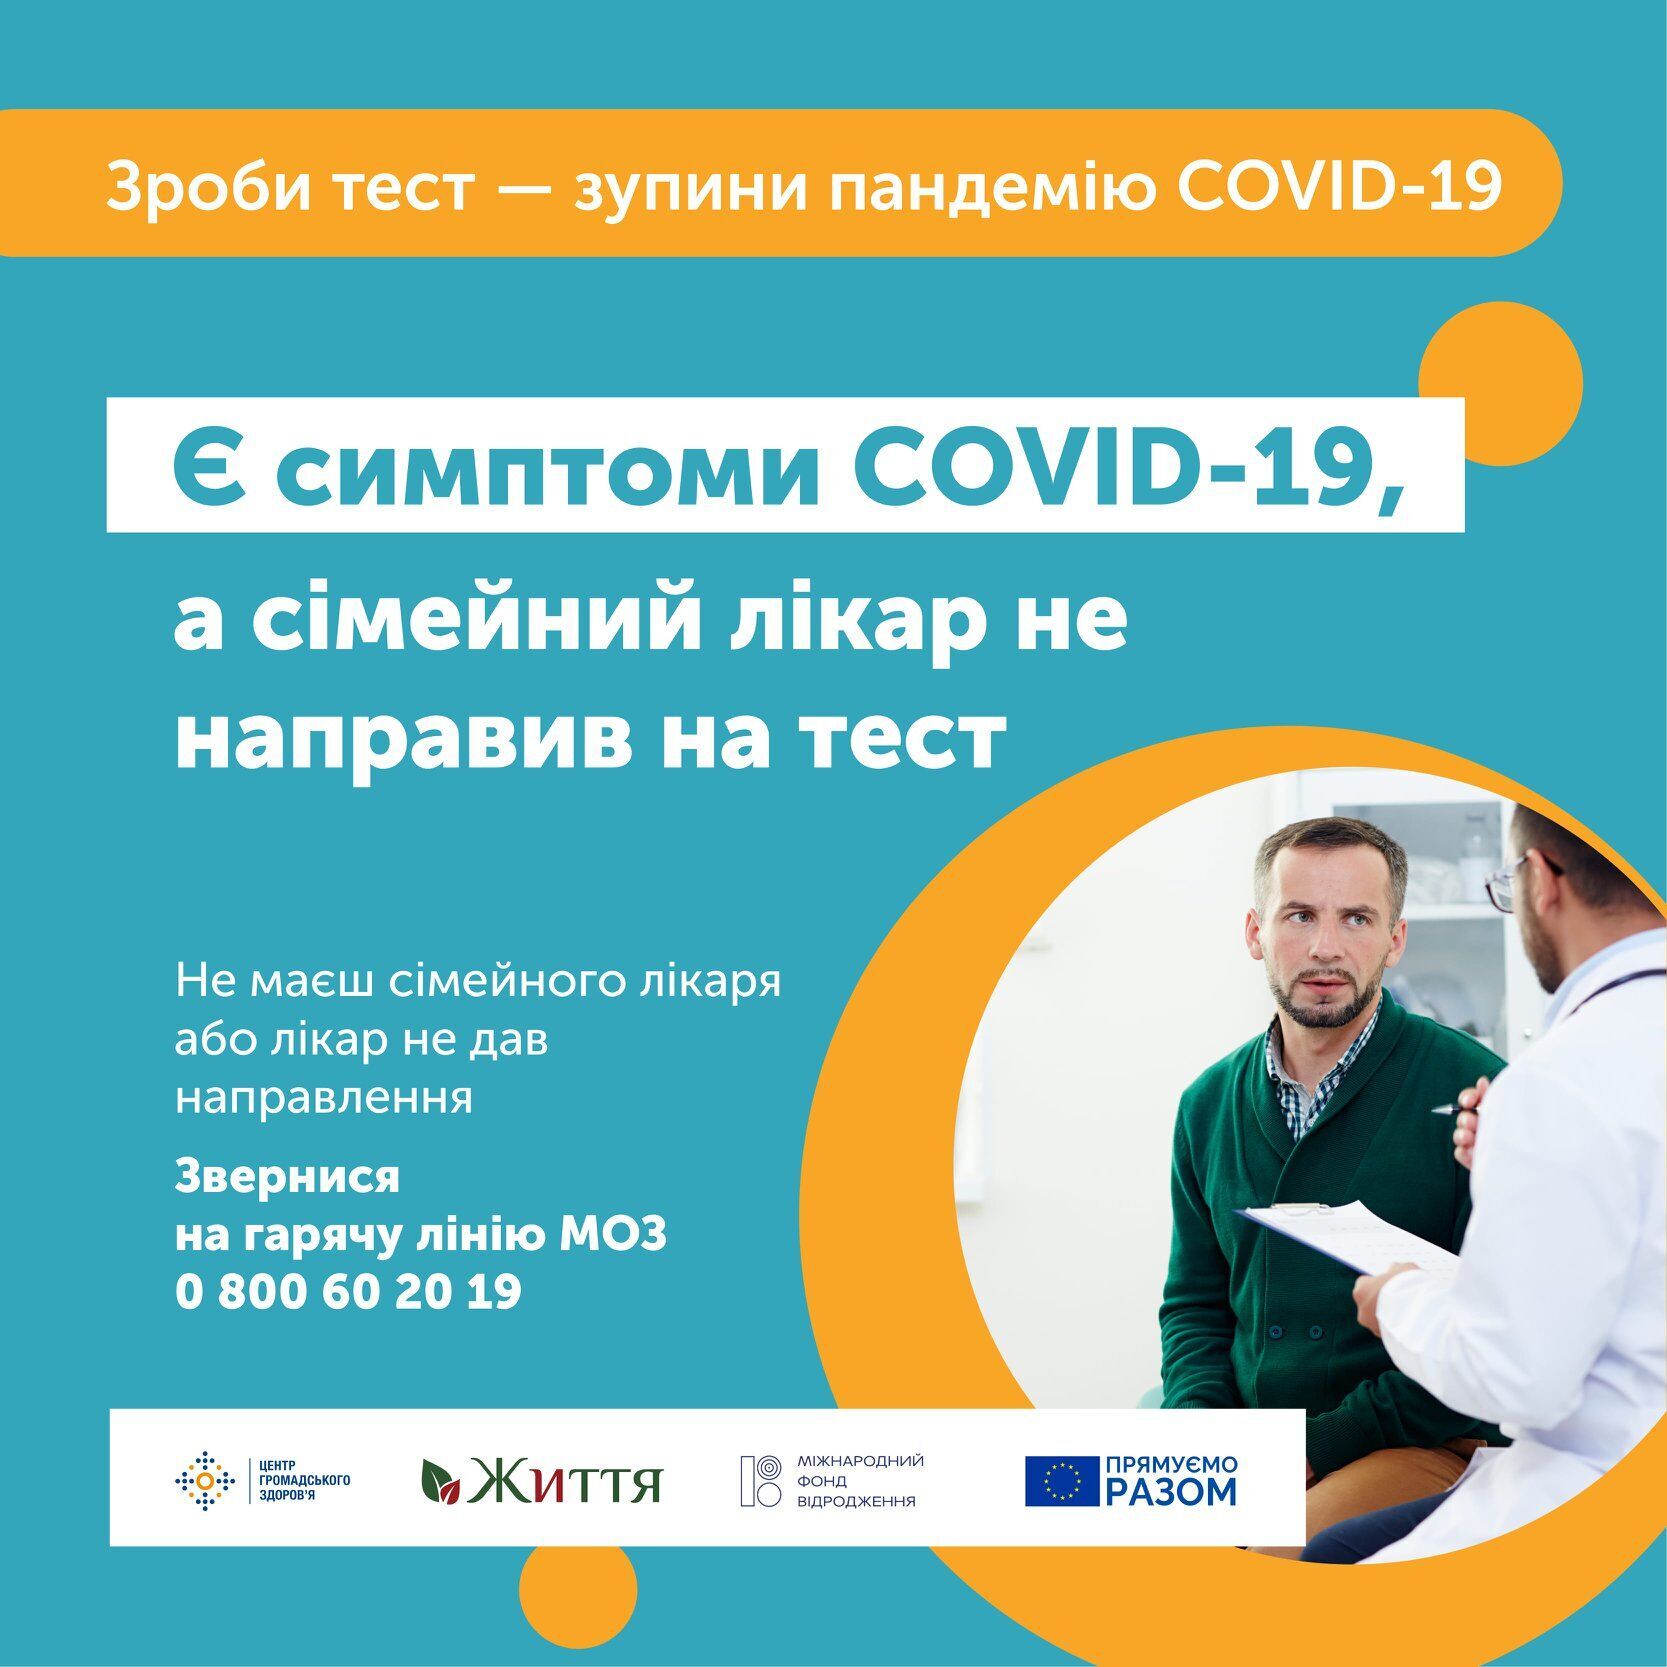 Facebook Центра общественного здоровья Украины